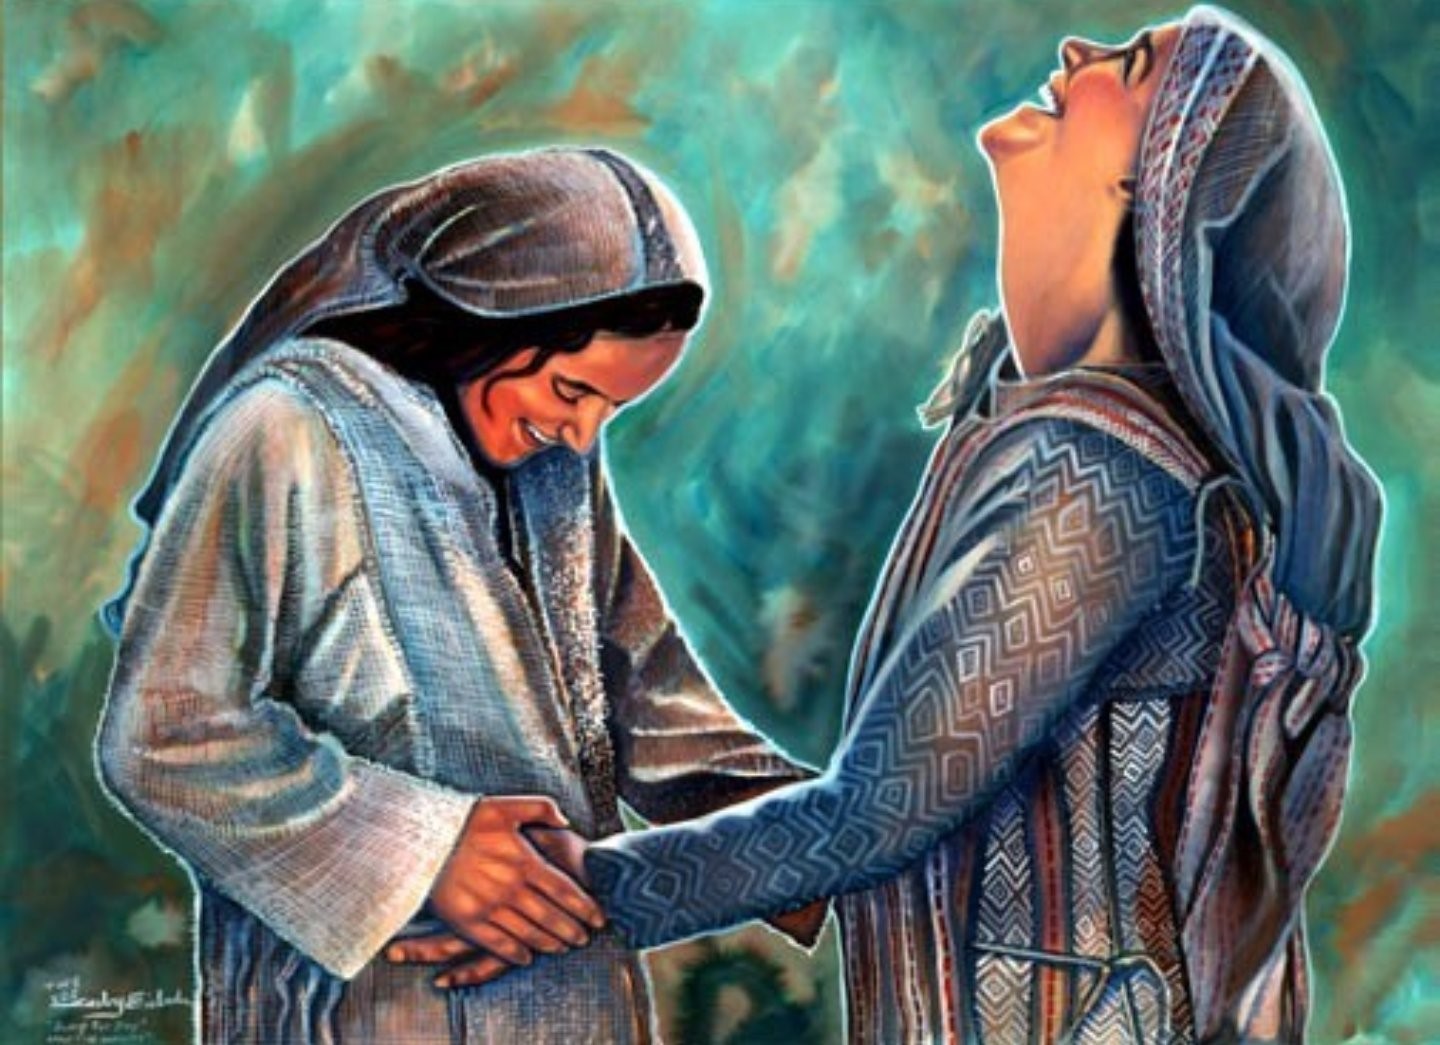 Ngày 31/5: Đức Mẹ đi viếng bà thánh Êlisabét